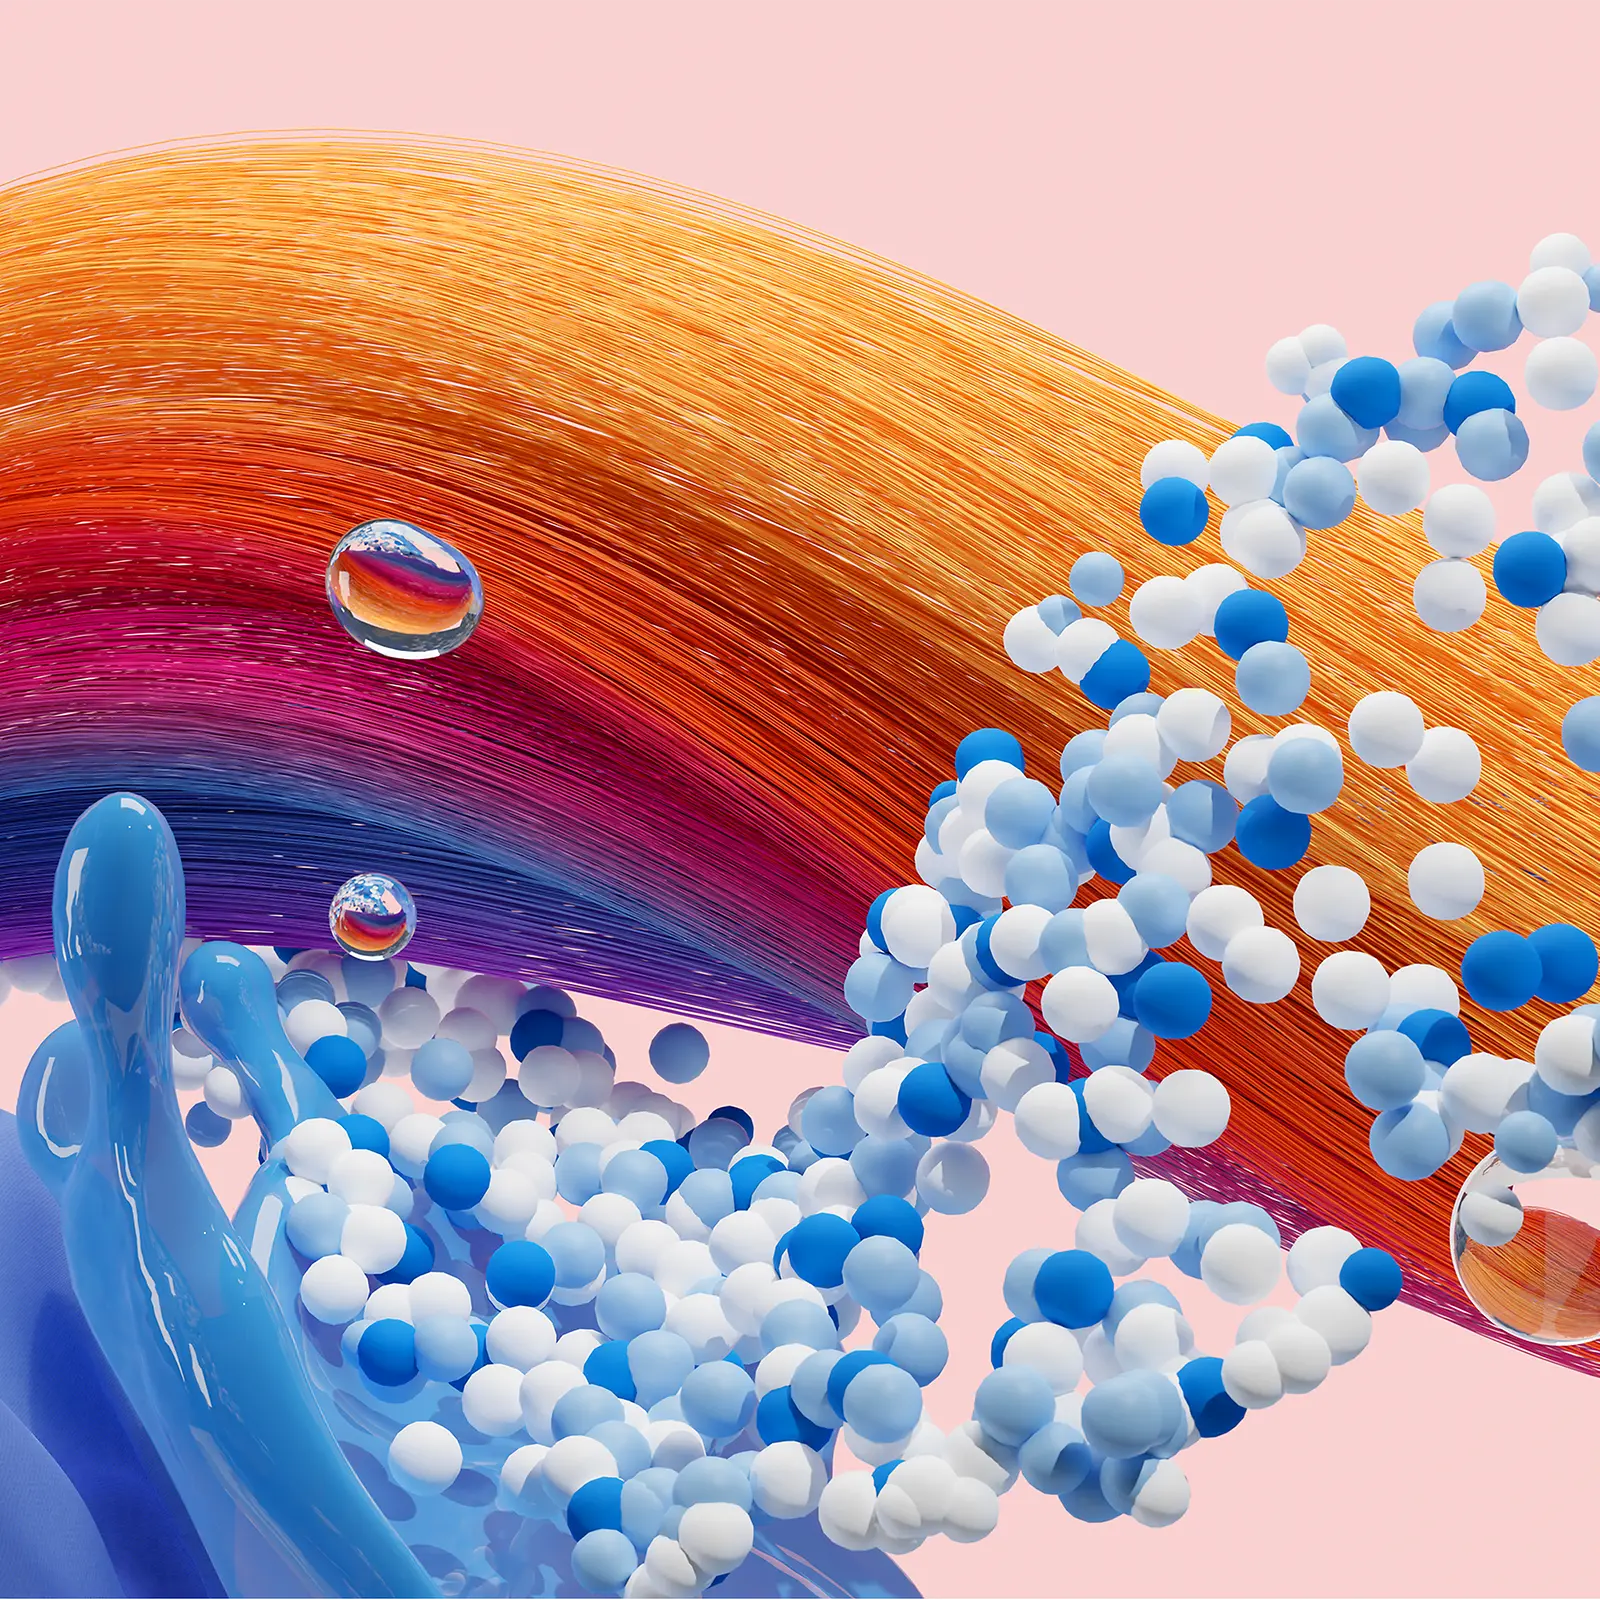 Абстрактне зображення, що символізує бізнес-підрозділ «Споживчі бренди» компанії «Хенкель» і представляє засоби для догляду за волоссям, засоби для прання та догляду за оселею.